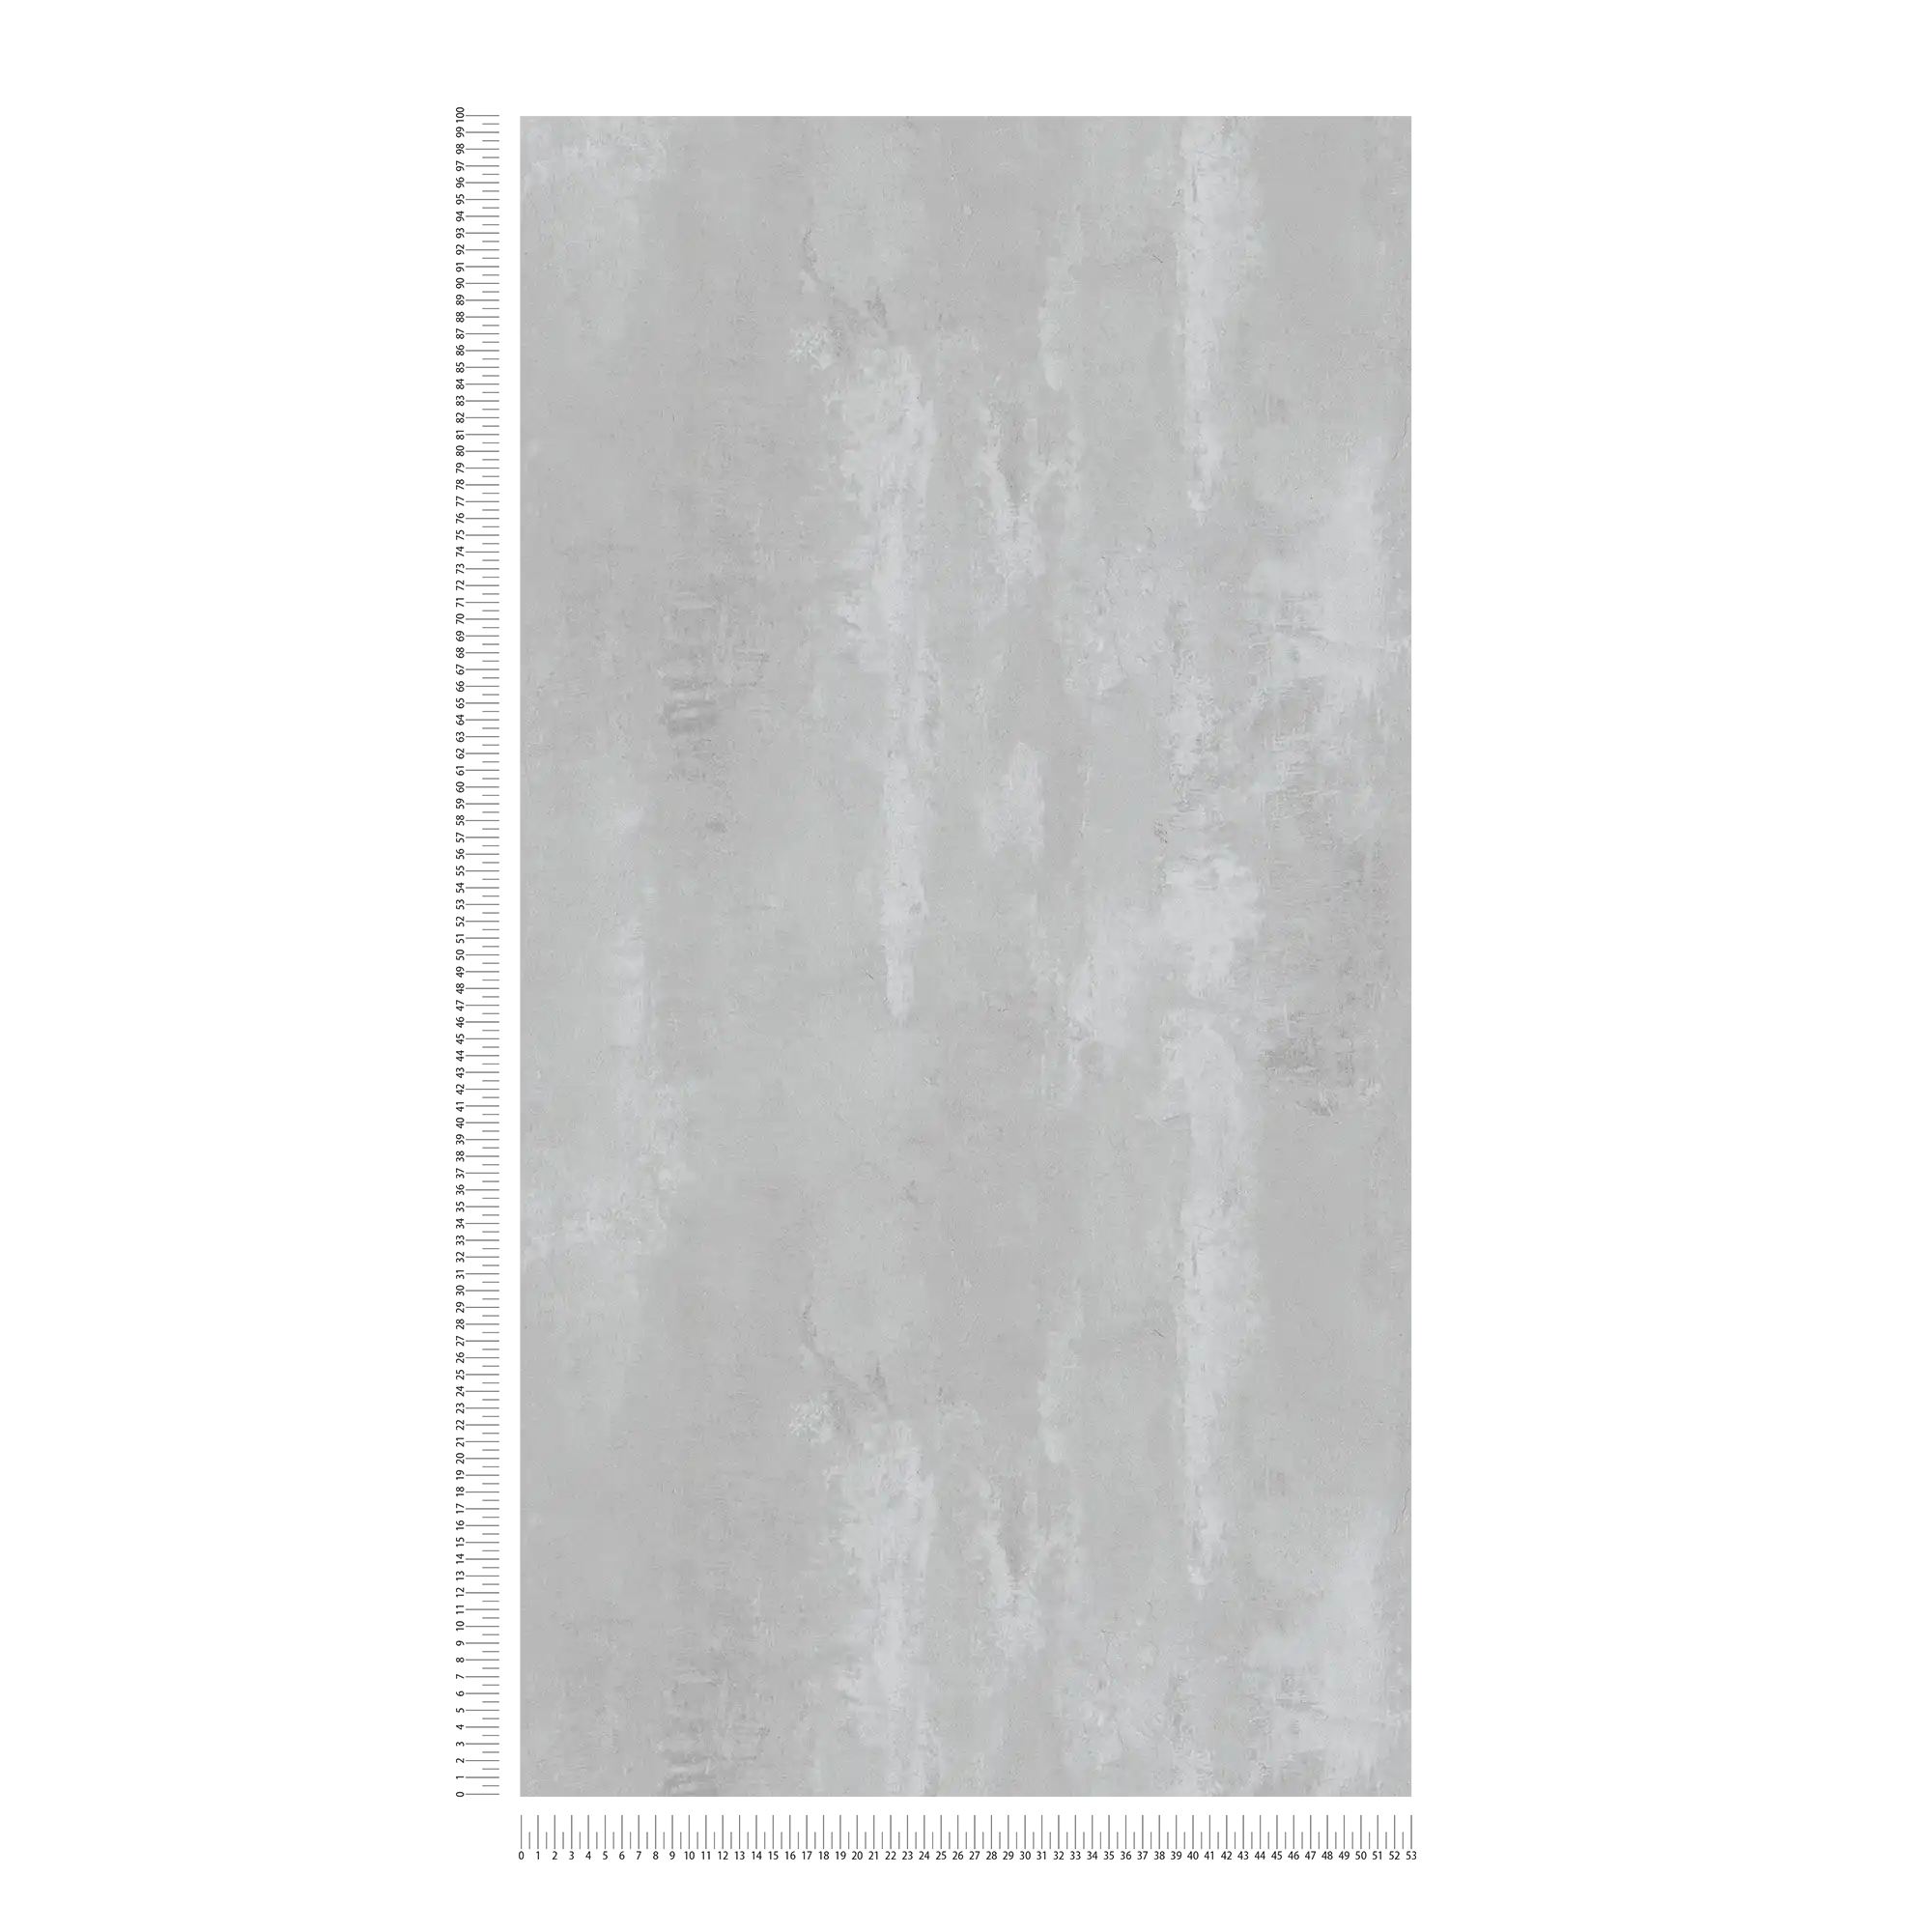             Carta da parati in cemento con motivo wipe-clean in stile industriale - grigio
        